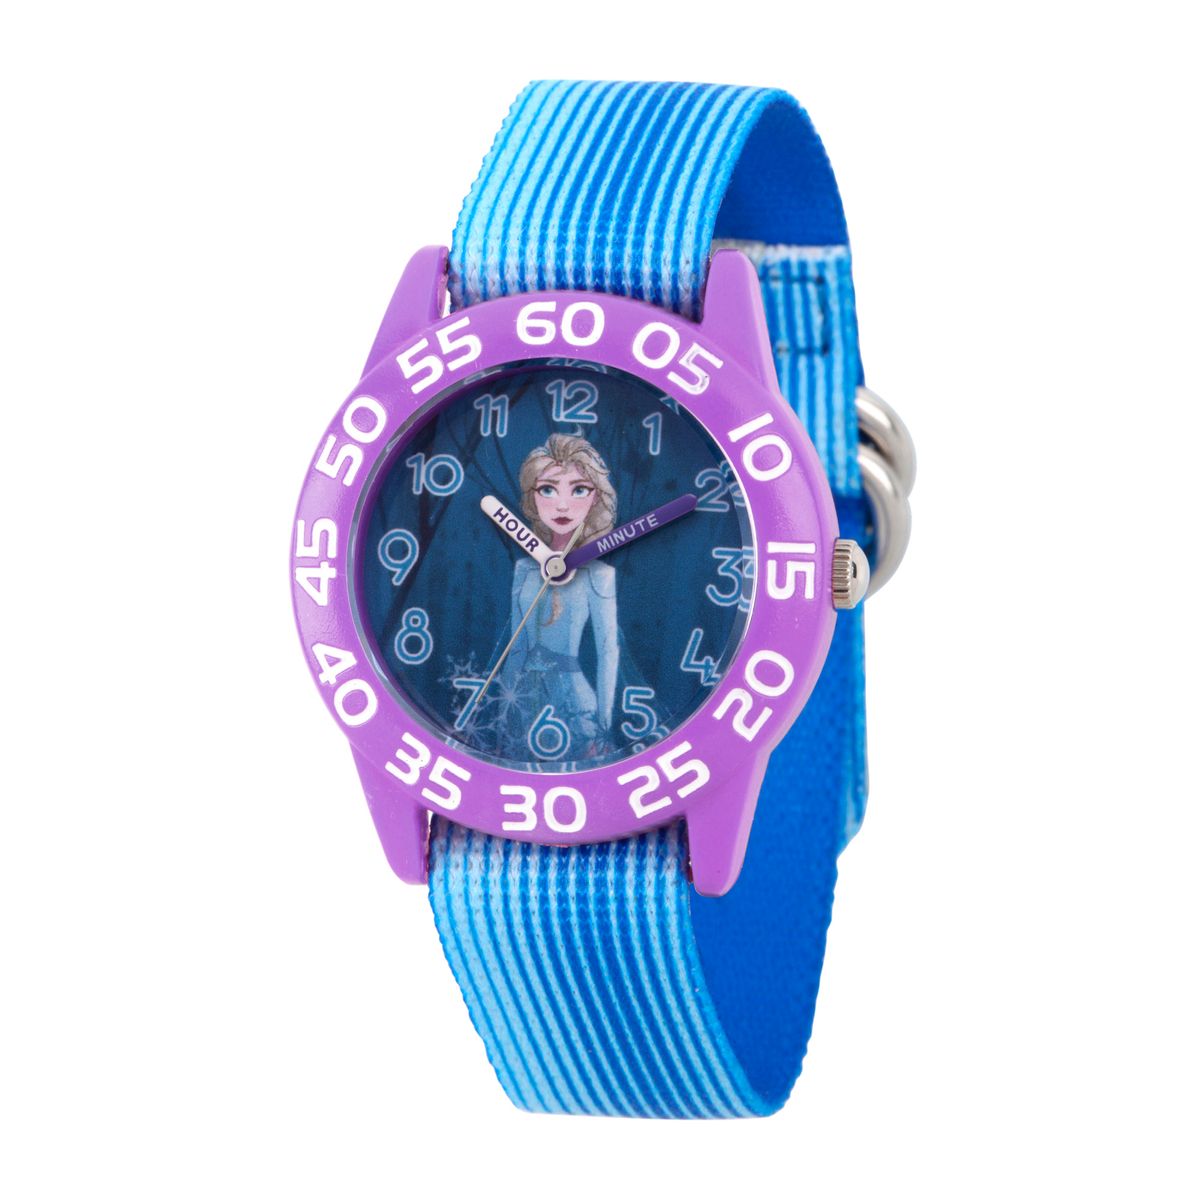 楽天Walmart 楽天市場店[RDY] [送料無料] Disney フローズン2 エルサ ガールズ パープル プラスチックウォッチ 1本入 [楽天海外通販] | Disney Frozen 2 Elsa Girls' Purple Plastic Watch, 1-Pack